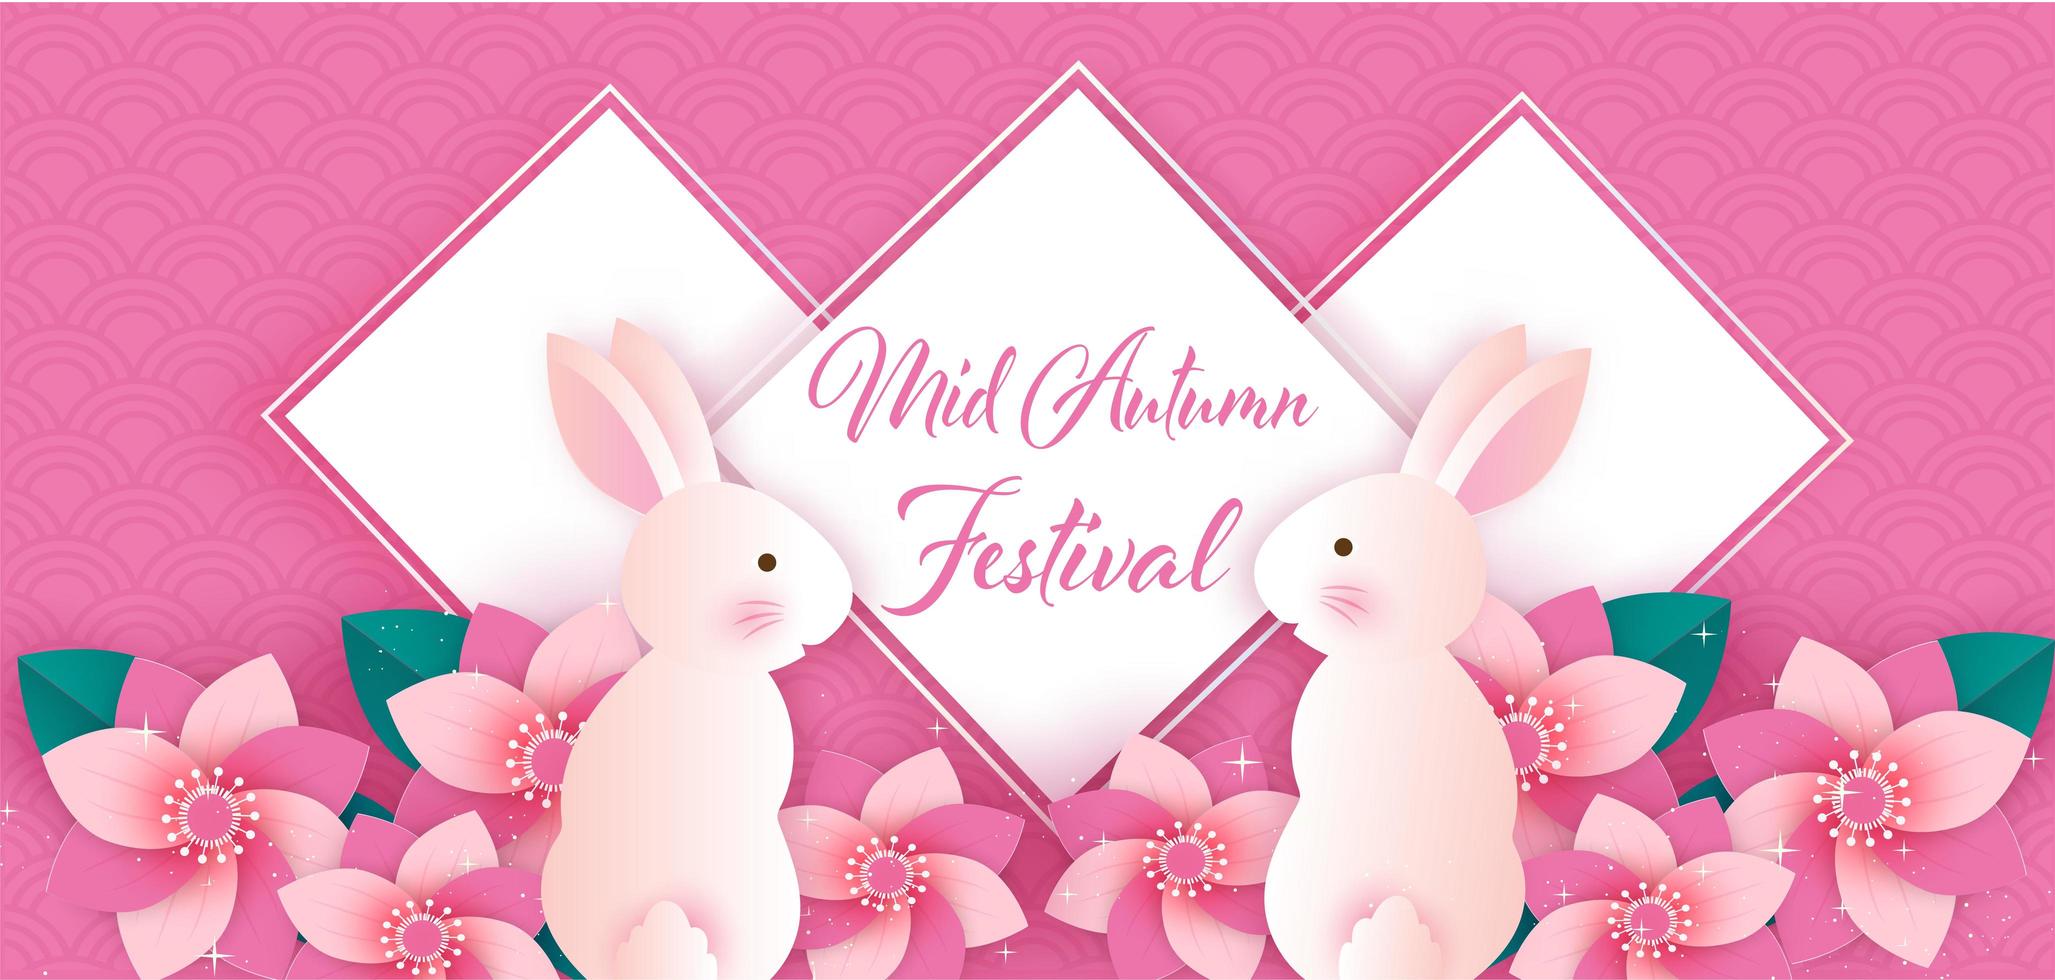 papier kunst medio herfst festival banner met konijnen in bloemen vector